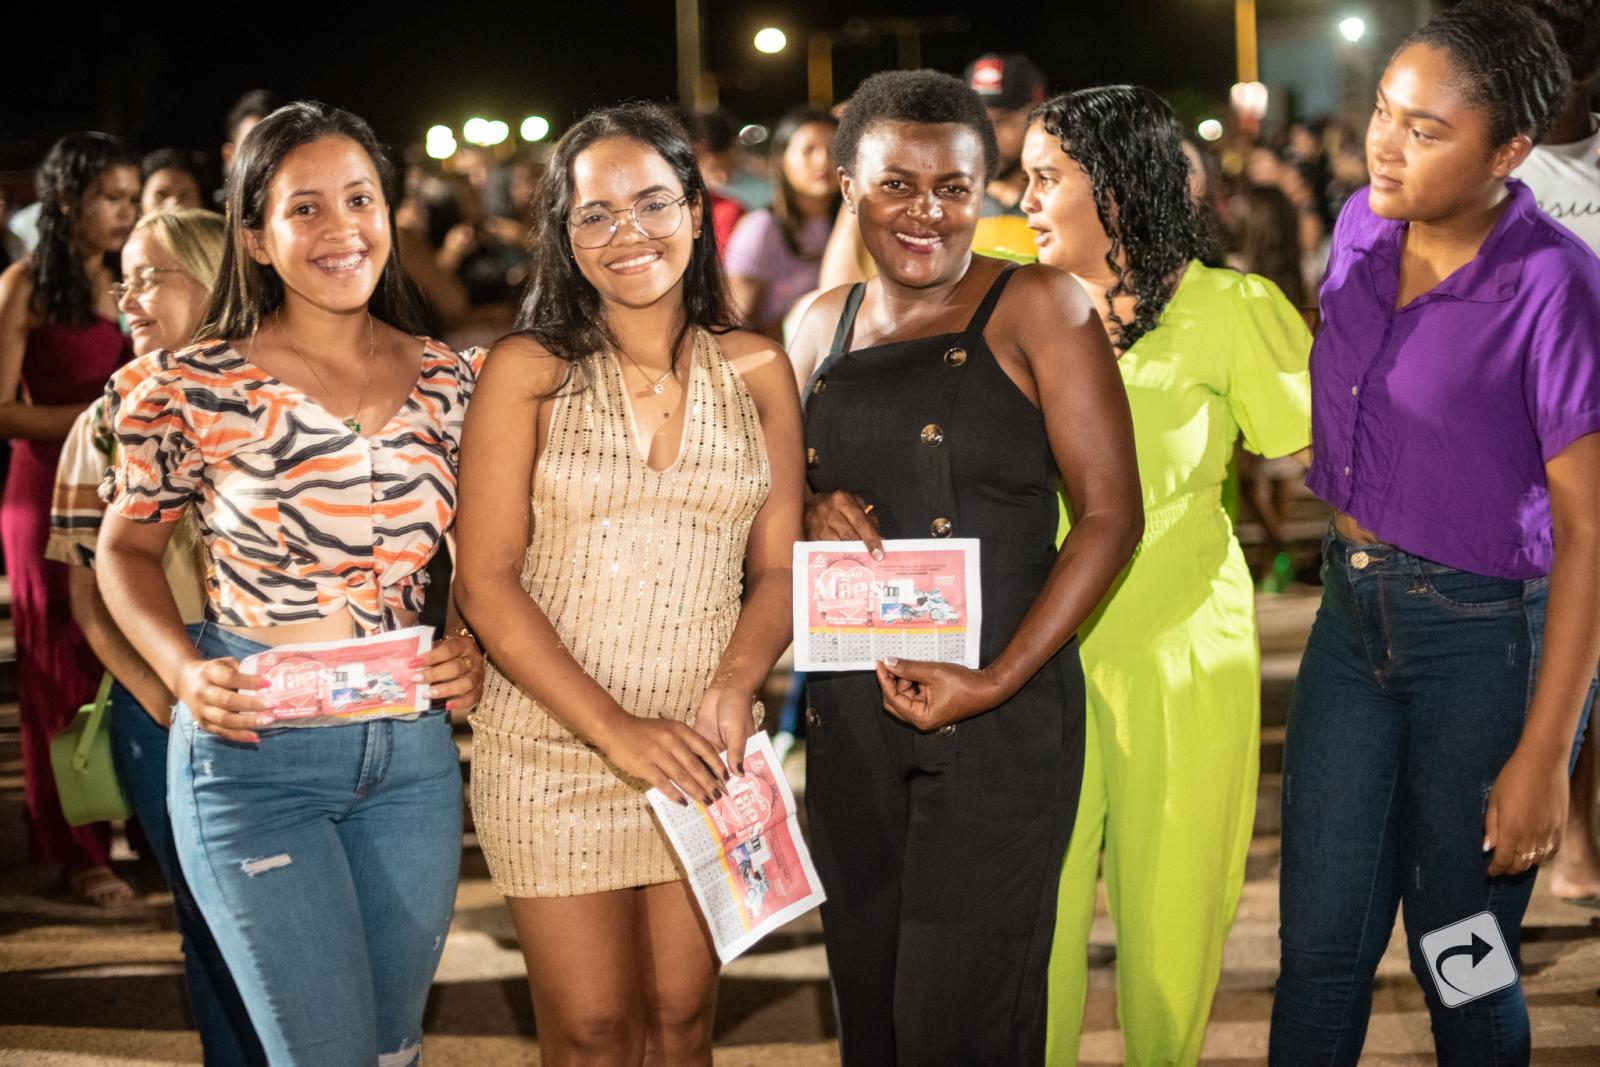 Prefeitura de Junco do Maranhão promove Show de Prêmios em comemoração ao Dia das Mães